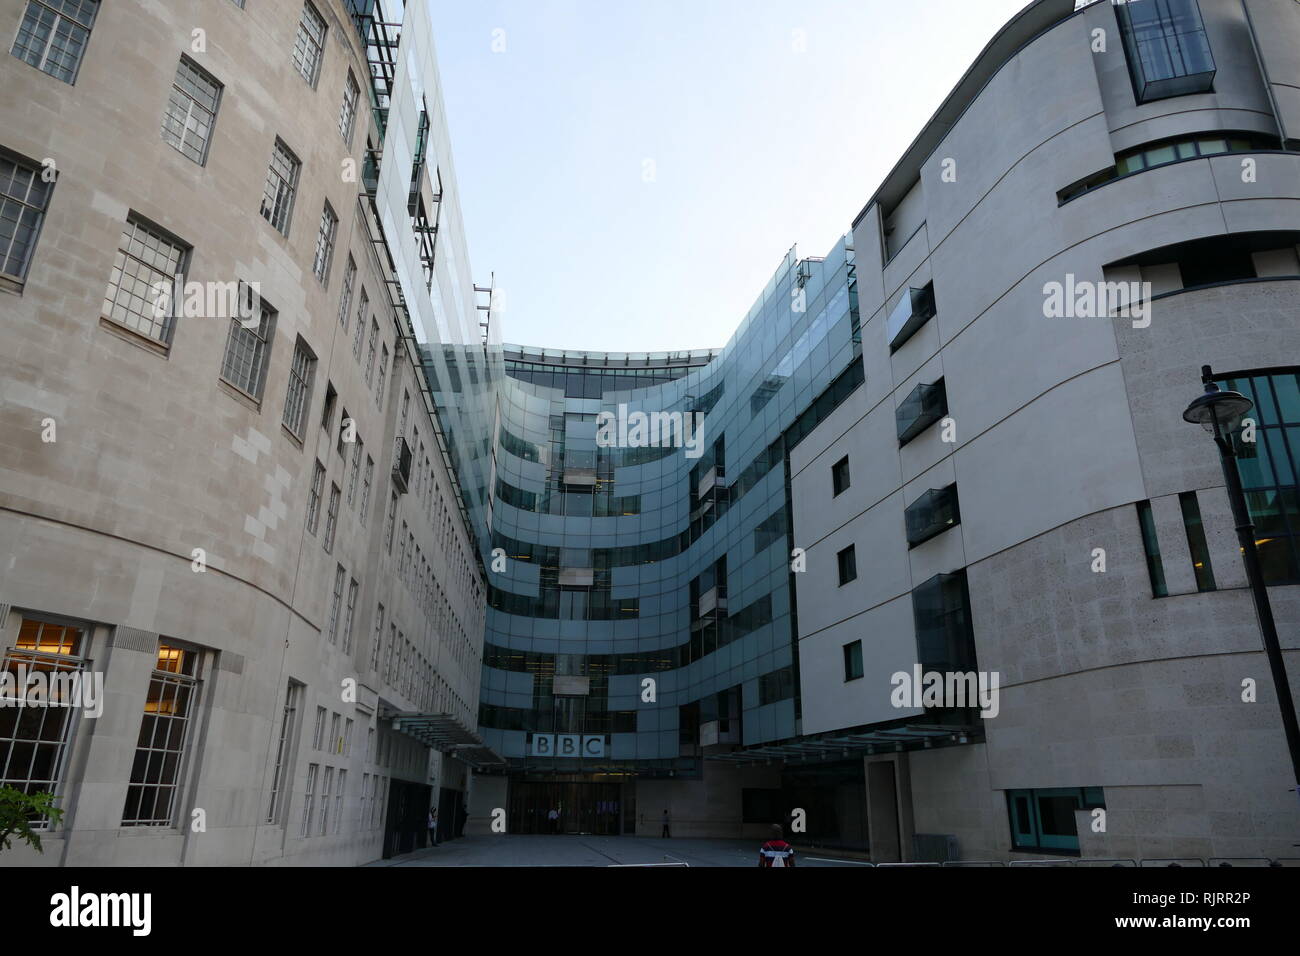 Broadcasting House, sede de la BBC, en Londres. La primera emisora de radio  desde el edificio fue realizado el 15 de marzo de 1932. El edificio  principal es de estilo Art Decó,